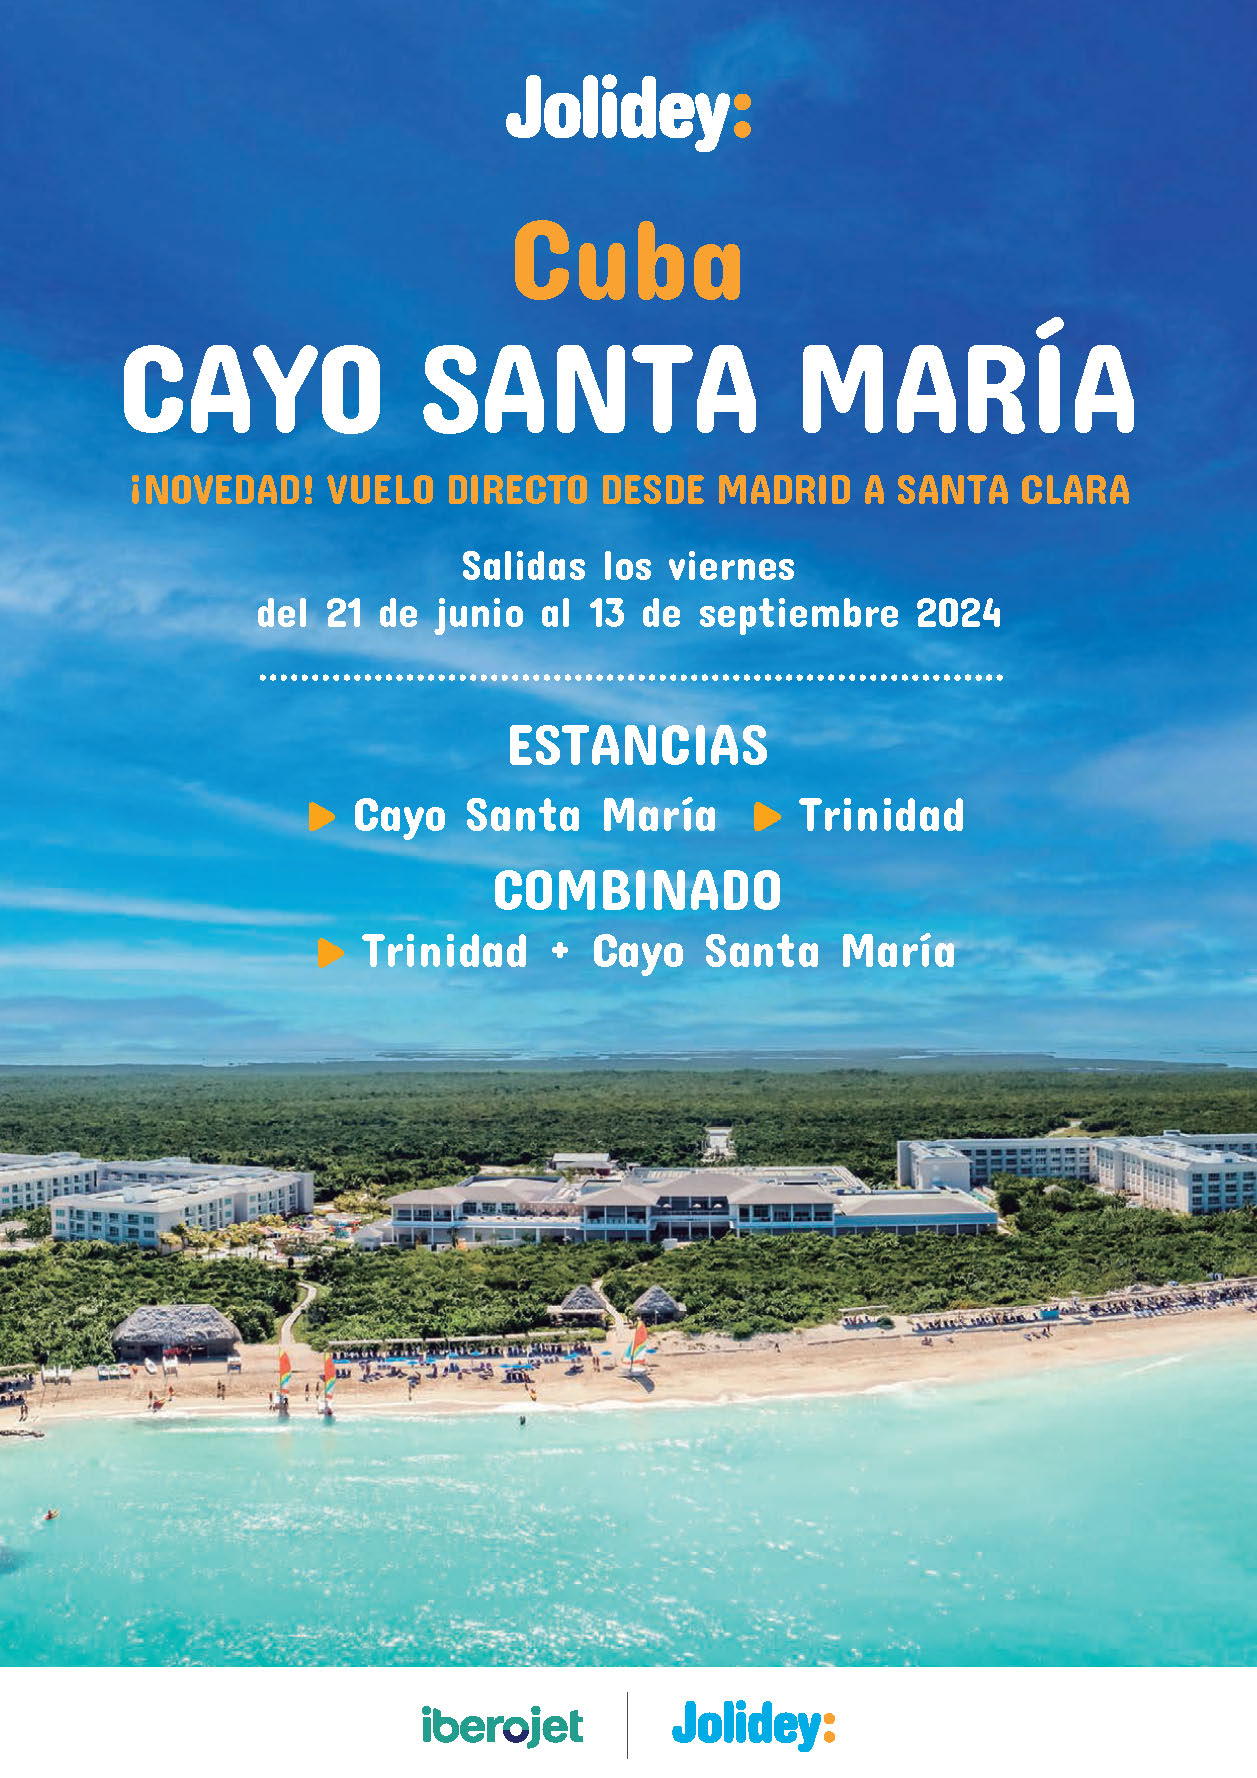 Oferta Jolidey Verano 2024 Cuba estancias y combinados Trinidad y Cayo Santa Maria 9 dias salida vuelo directo desde Madrid